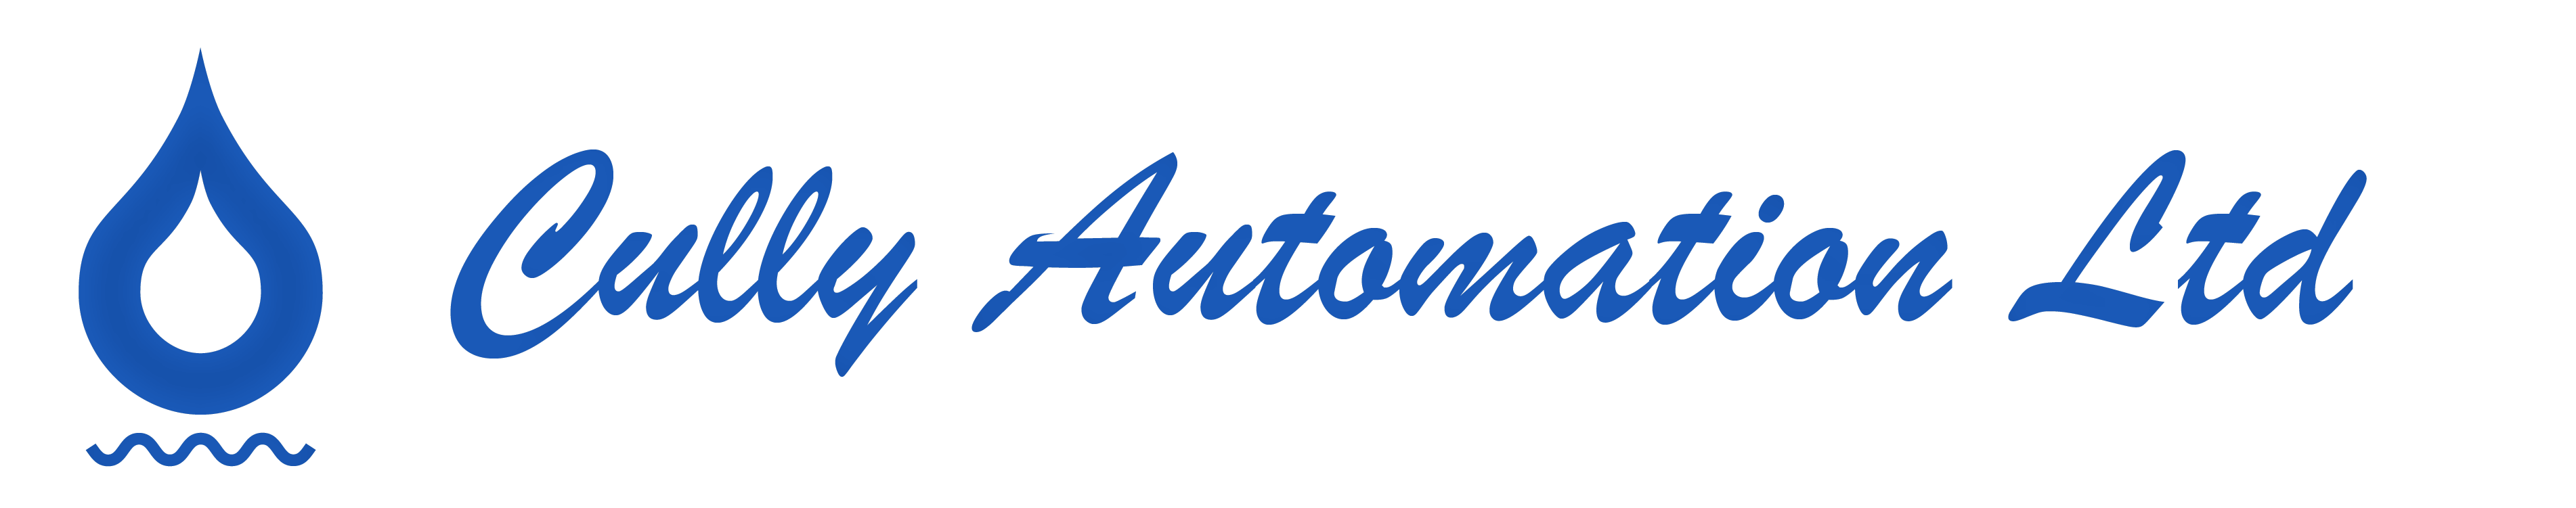 Cully Automation Ltd logo